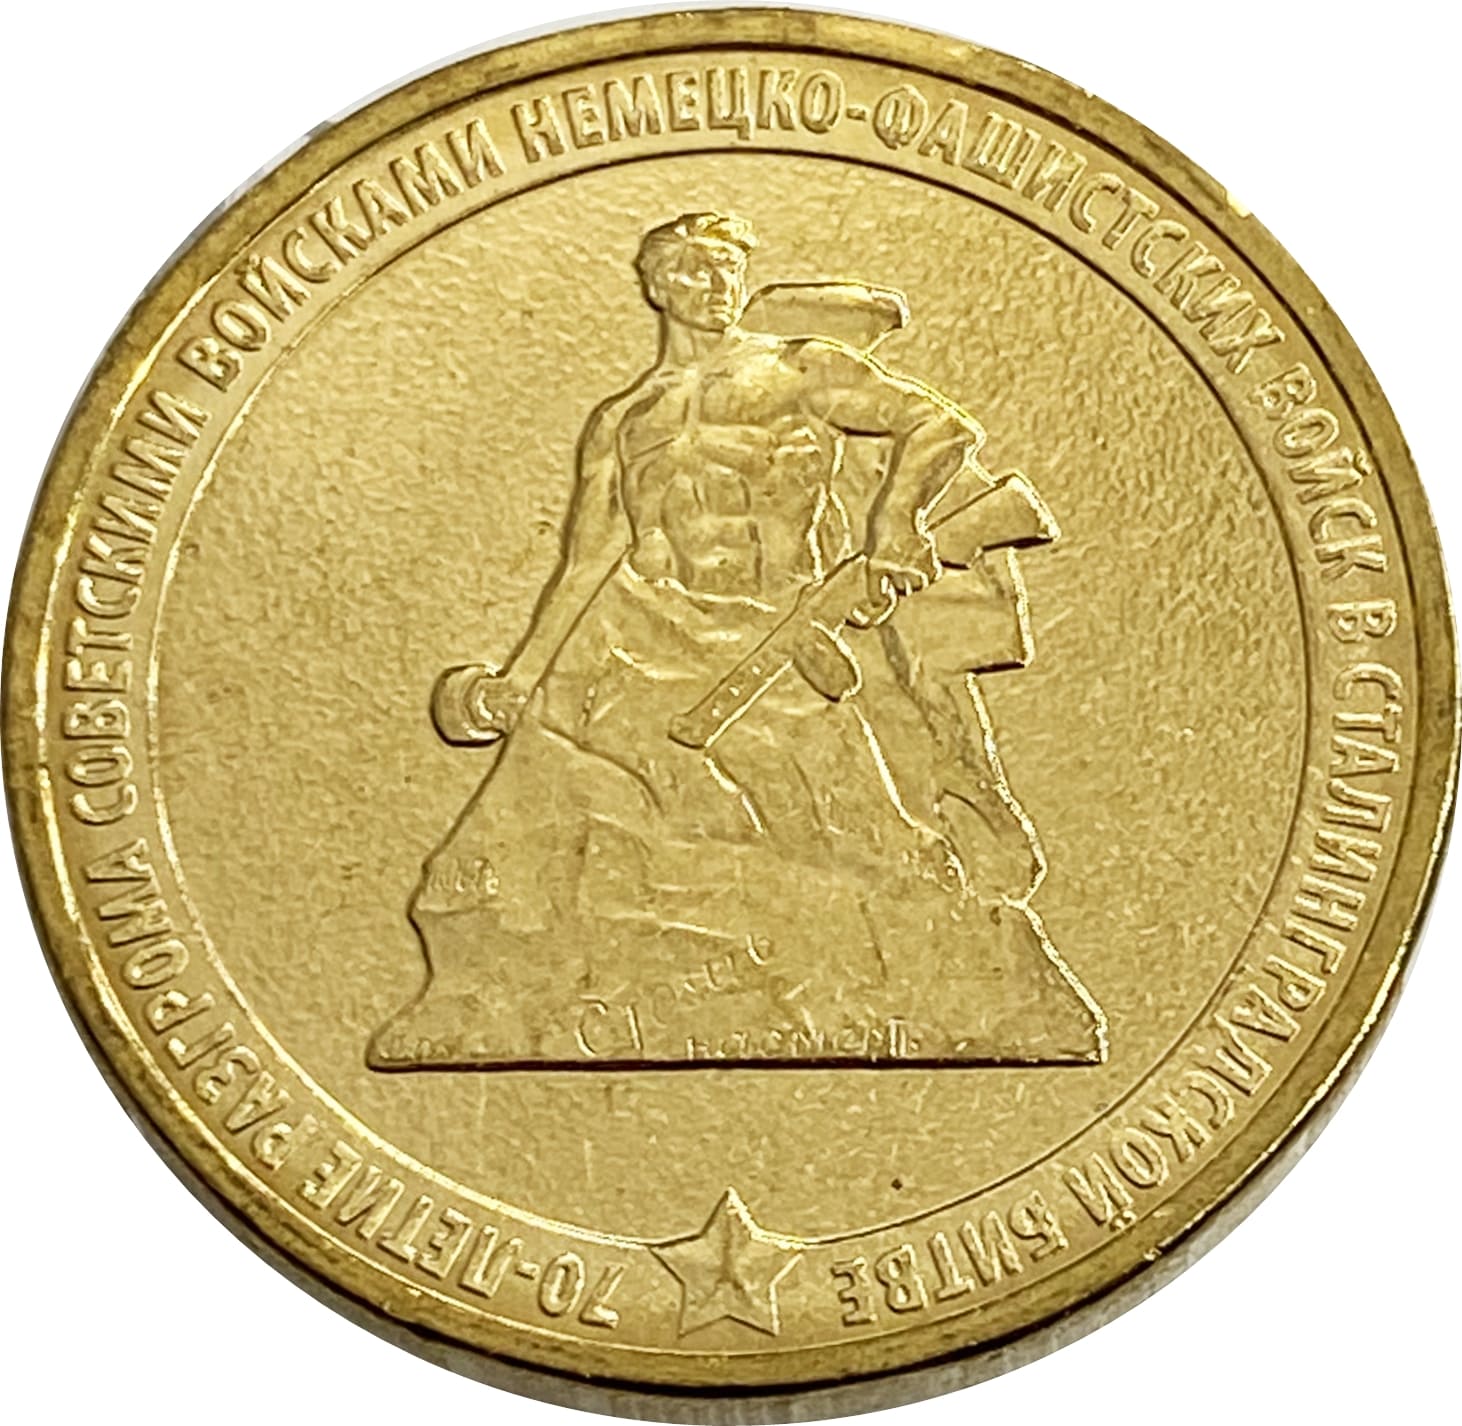 10 рублей 2013 70-летие Сталинградской битве